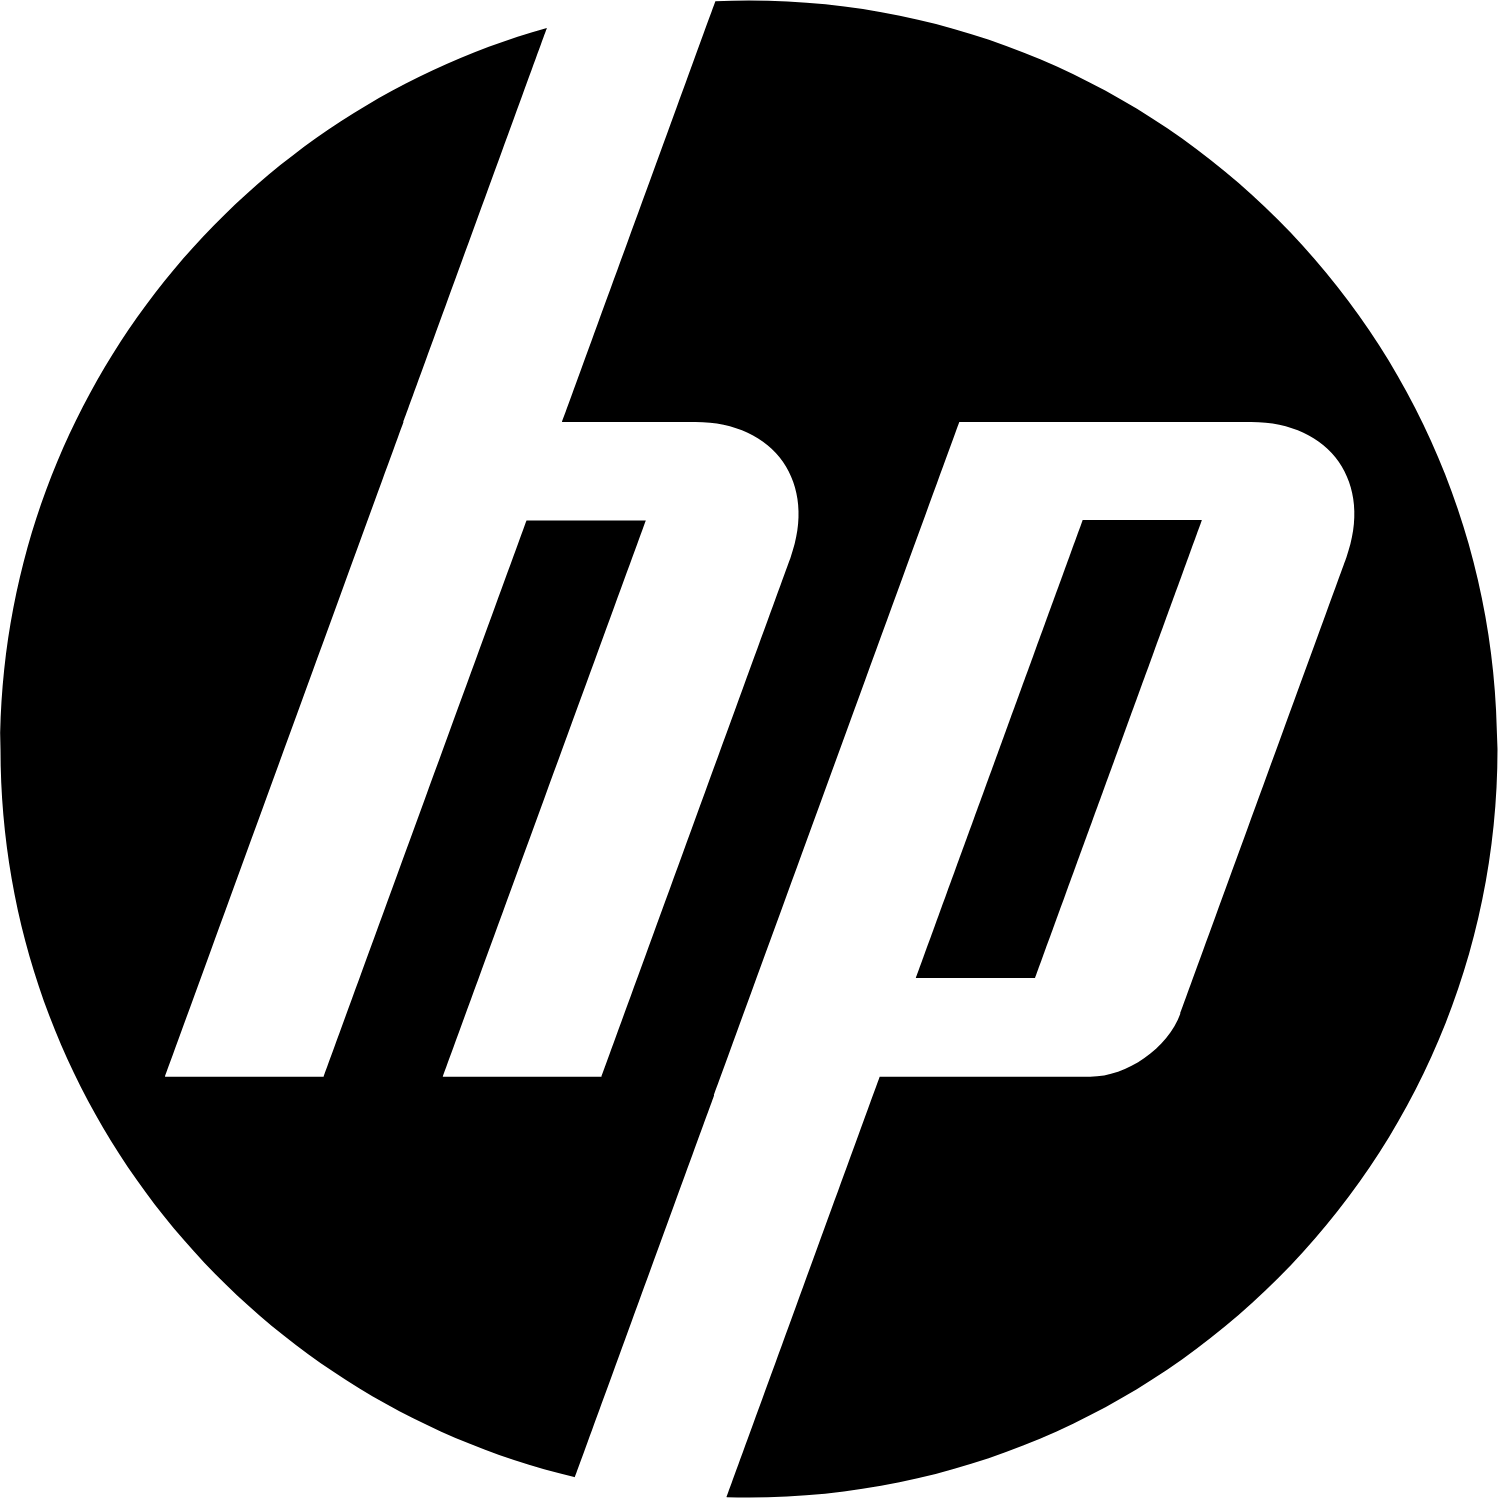 HP logo (transparent PNG)